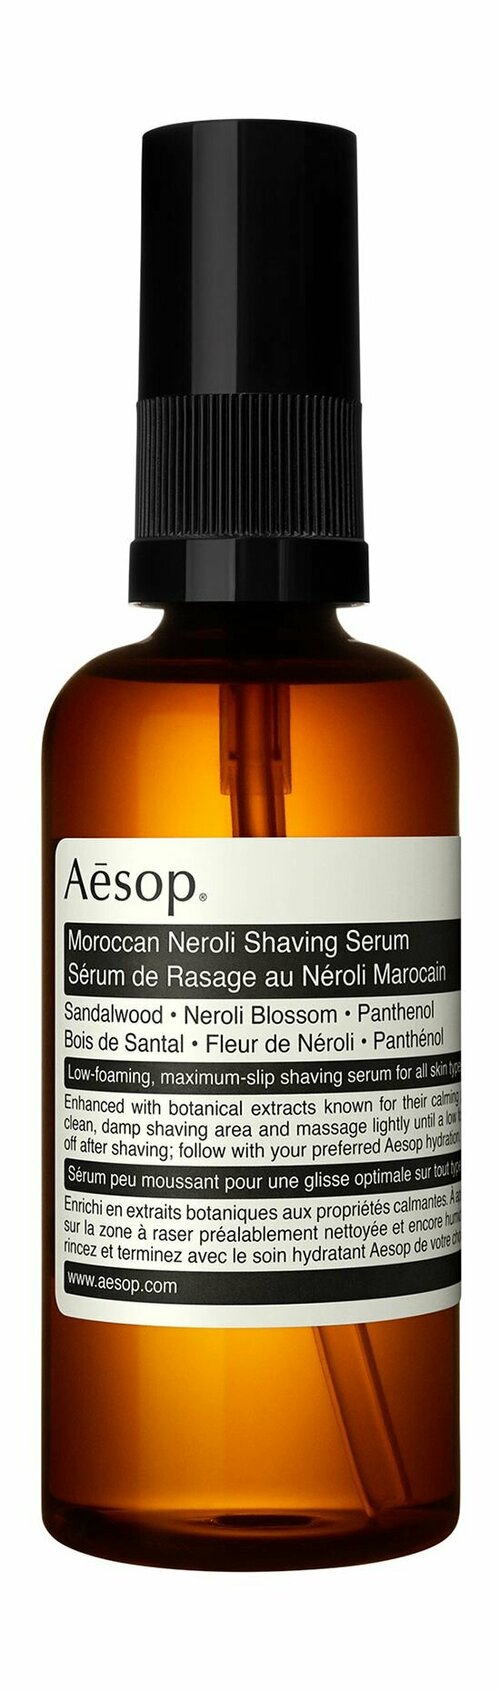 Смягчающая сыворотка для бритья с эктрактом нероли / Aesop Moroccan Neroli Shaving Serum